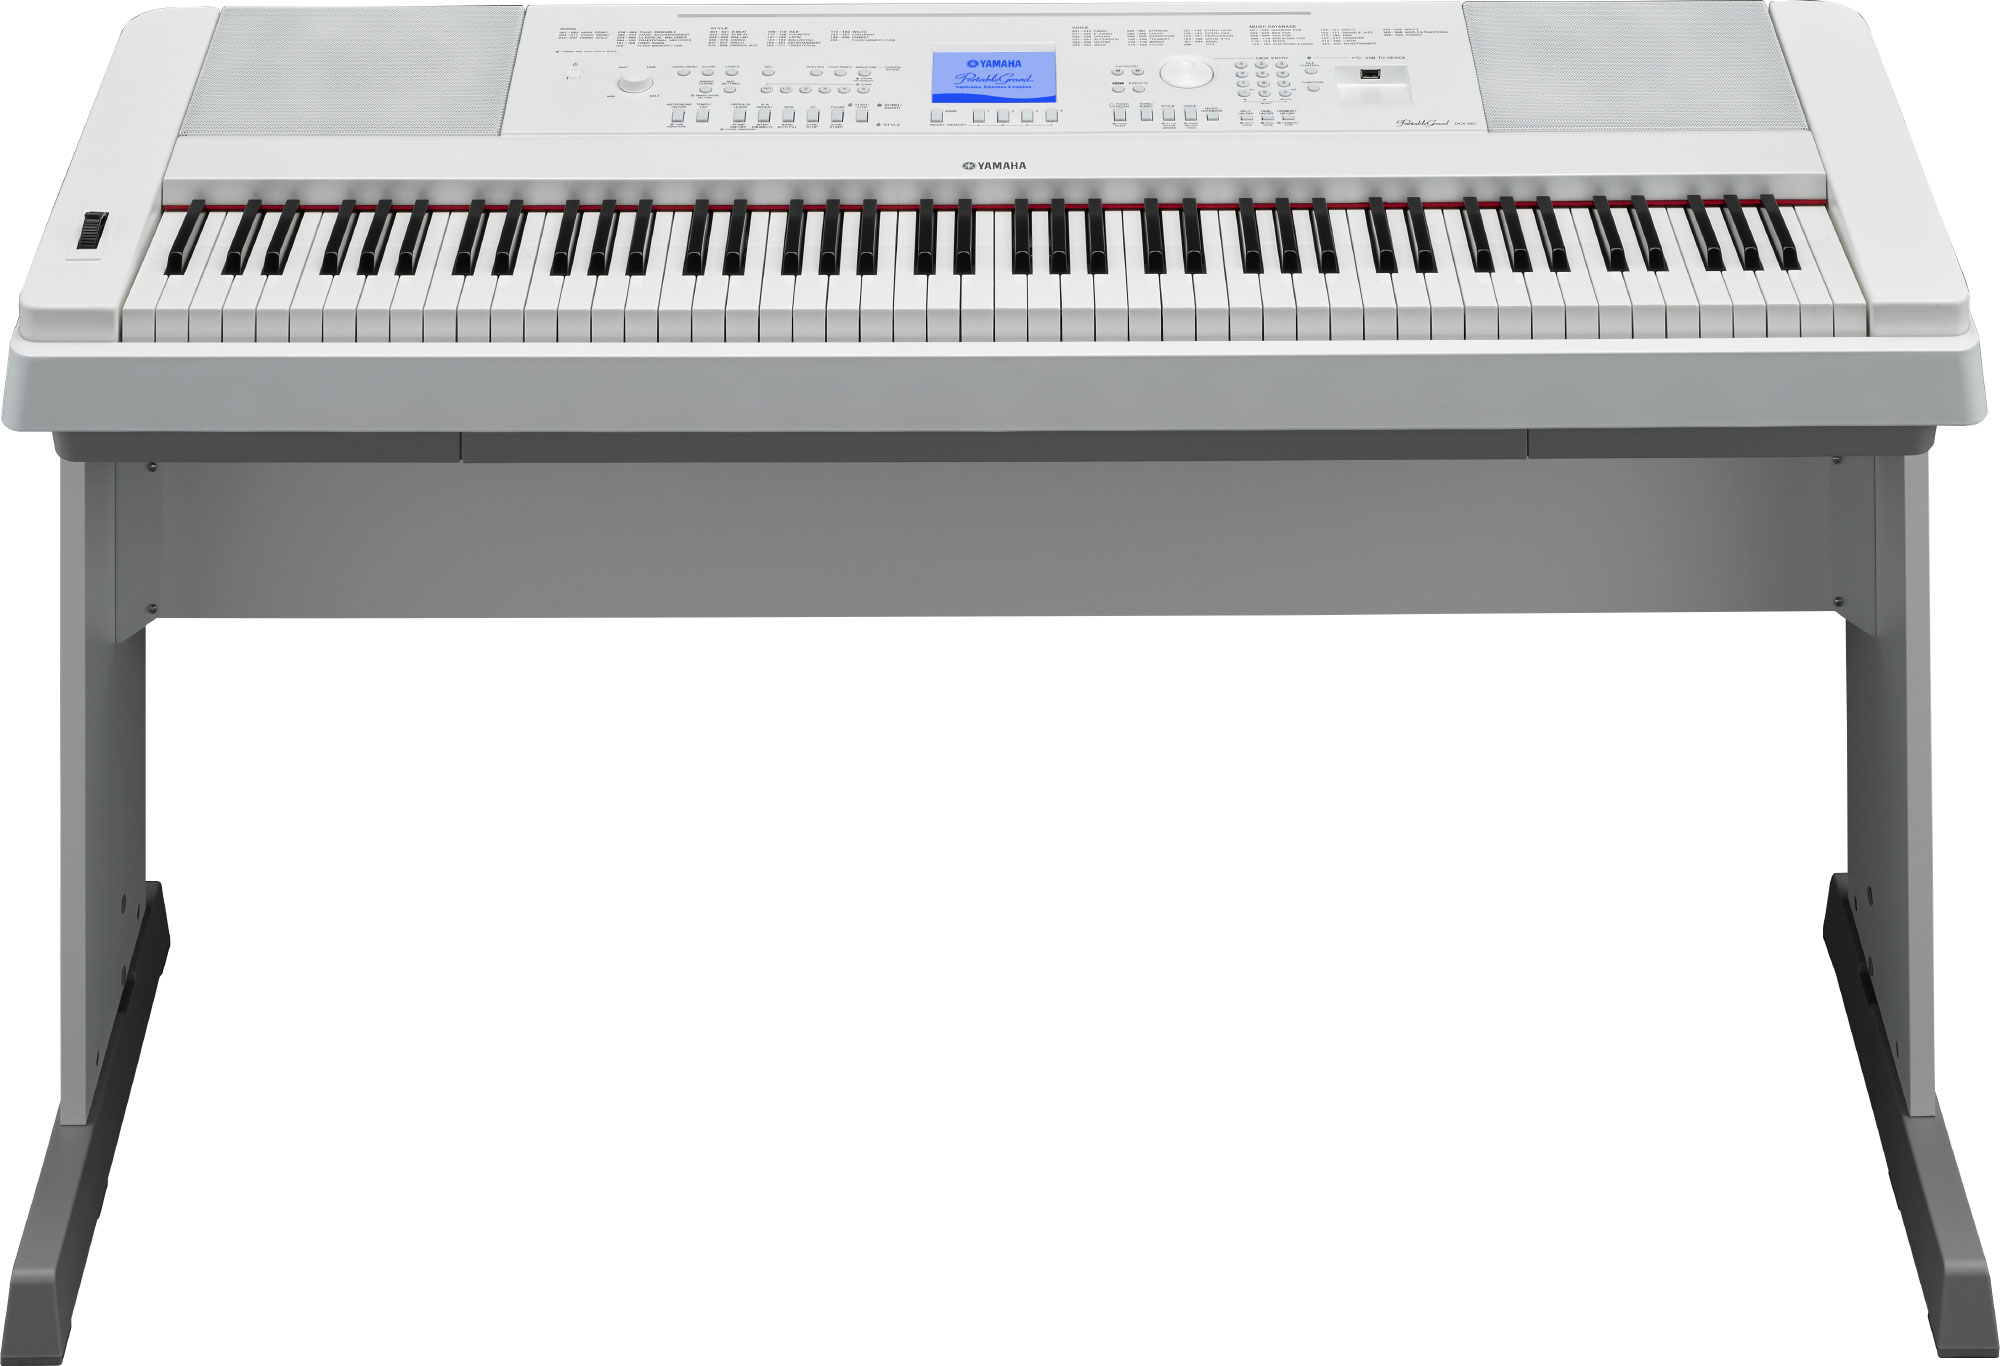 Ямаха бу купить в москве. Yamaha DGX-660. Цифровое пианино Yamaha DGX-660. Yamaha синтезатор DGX-660. Цифровое пианино Yamaha DGX-670.